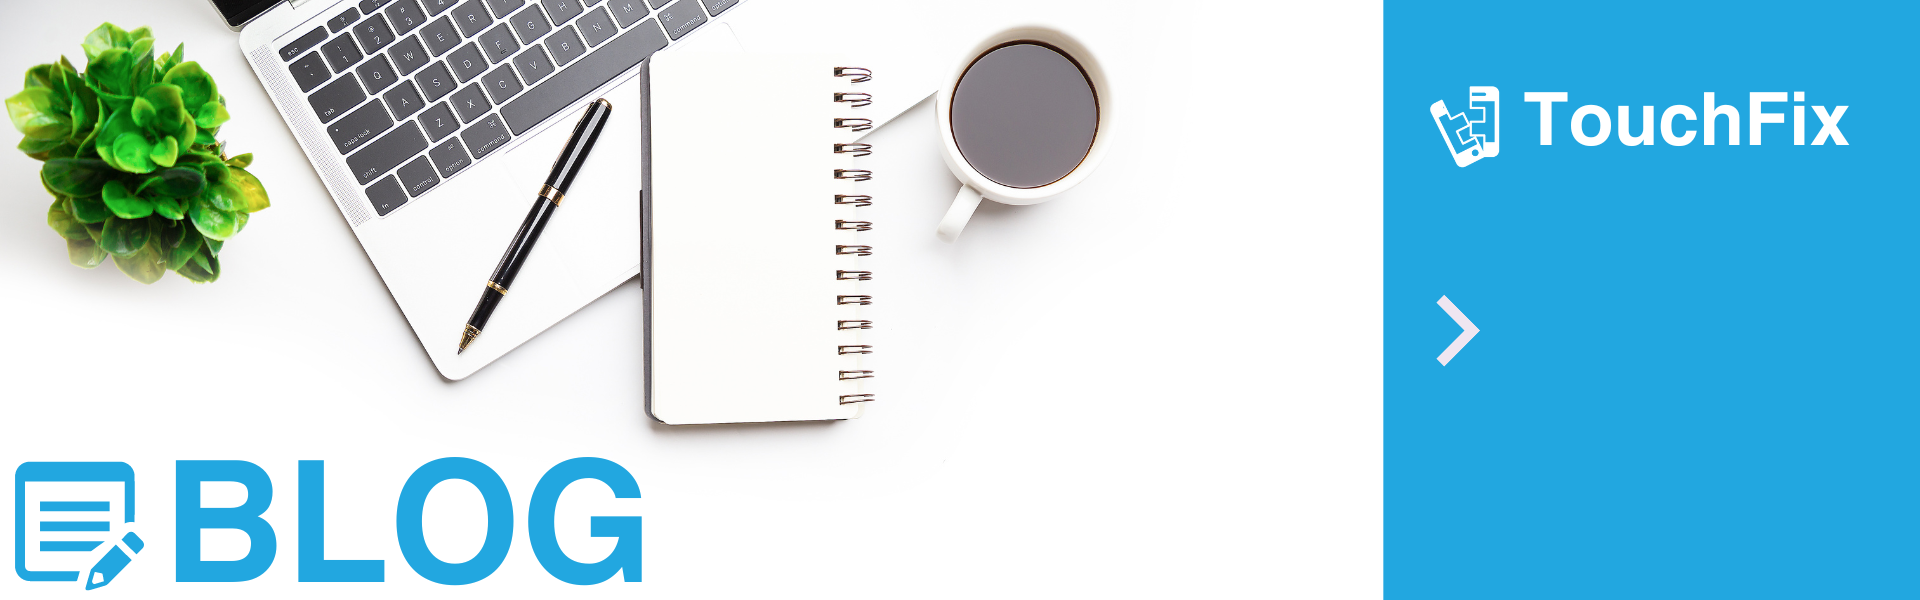 Sereen werkomgeving met open laptop, kop koffie en groene plant op wit bureau, met tekst 'BLOG' van TouchFix